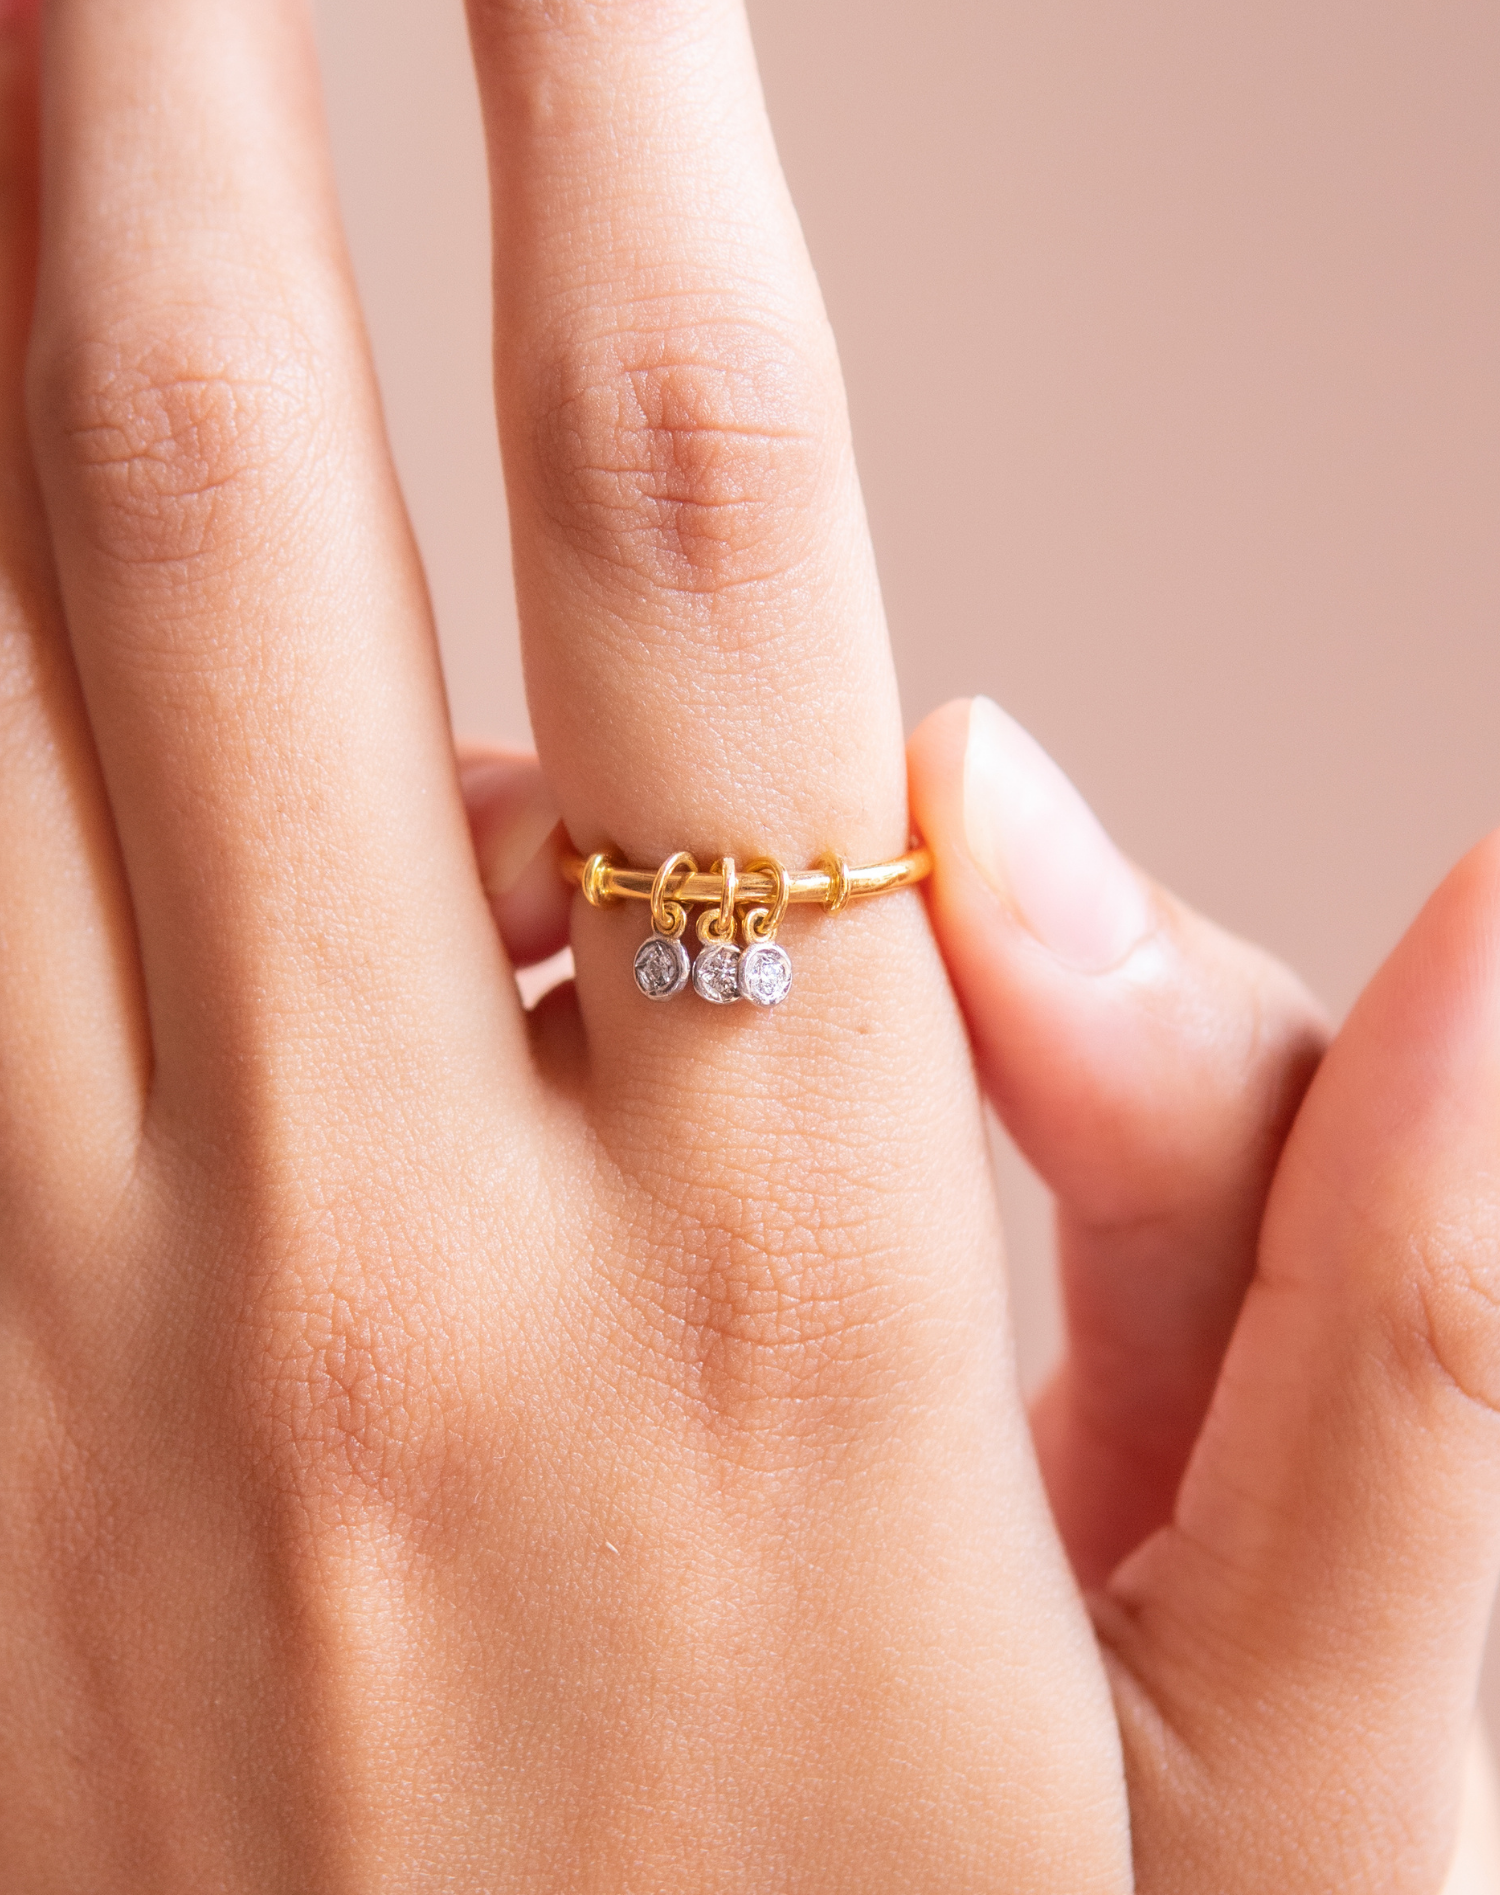 Buy Gold Finger Rings for Women | Gold Rings in Latest Design